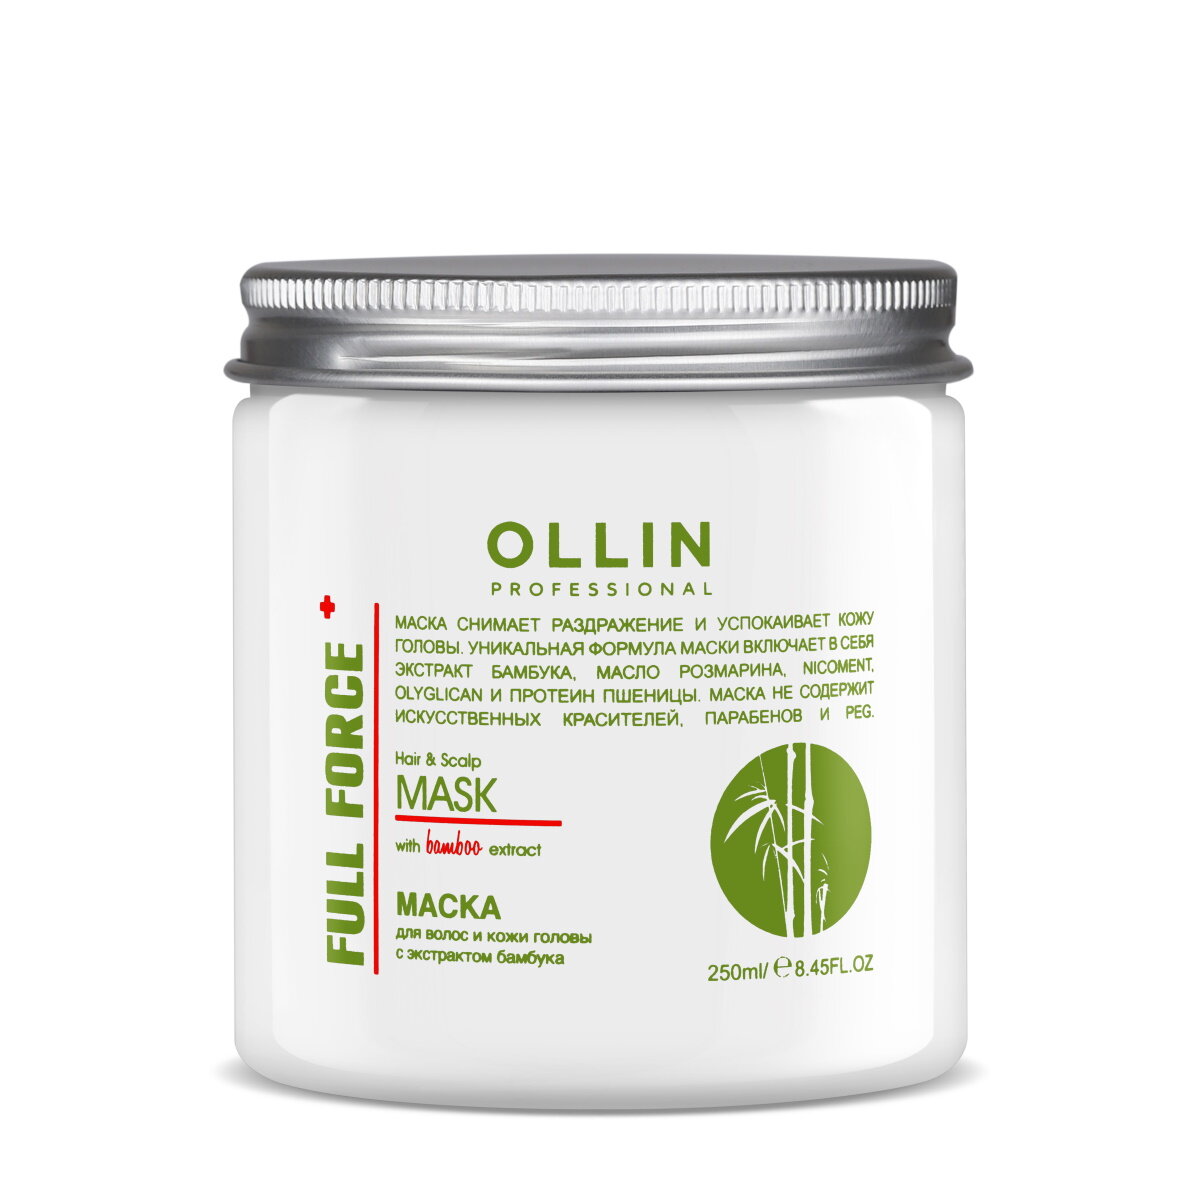 Ollin Professional Маска для волос и кожи головы с экстрактом бамбука 650 мл (Ollin Professional, ) - фото №8